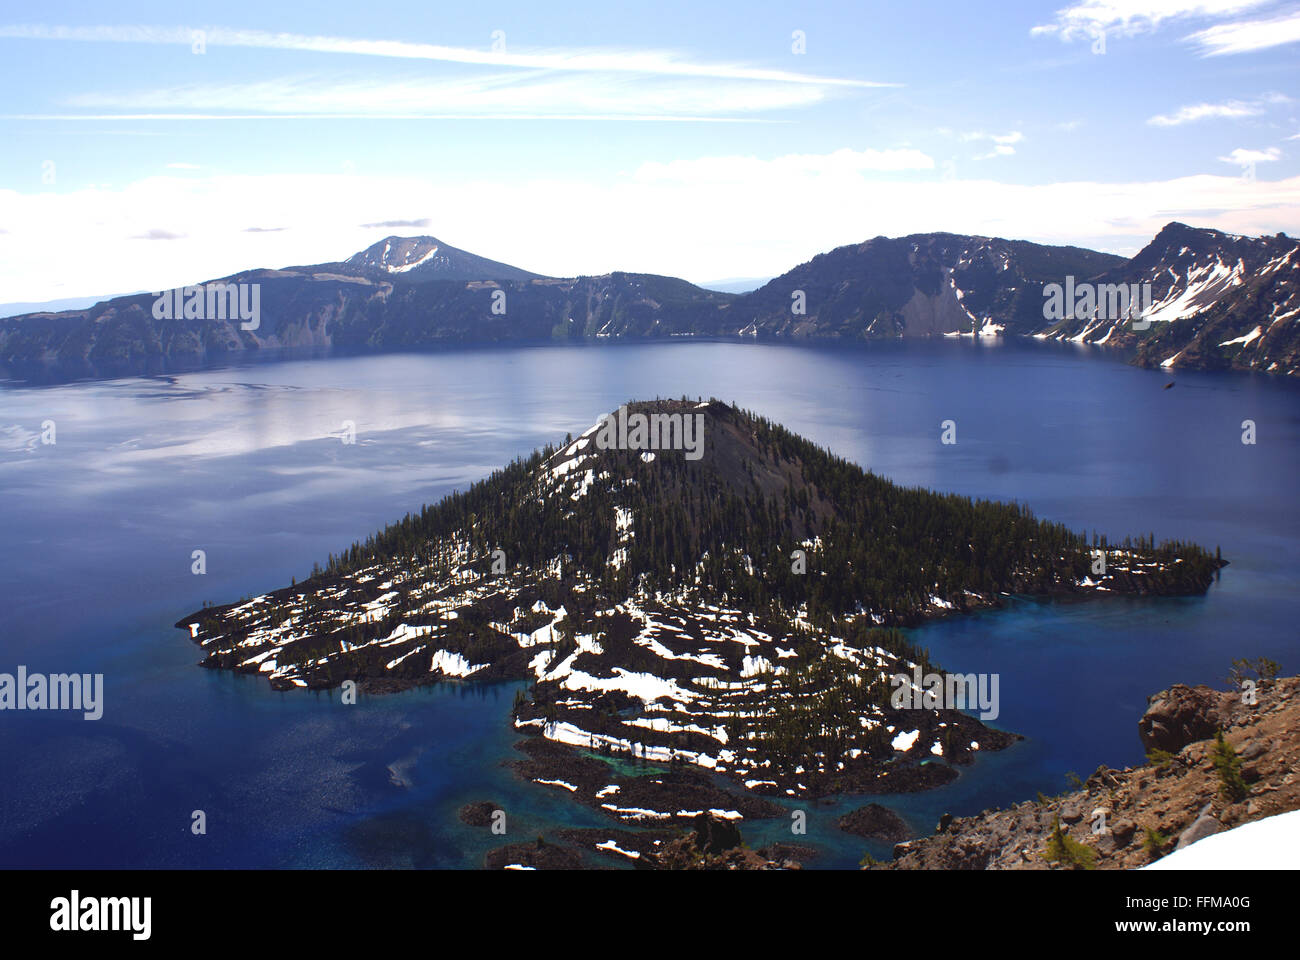 Le lac du cratère, Caldera Lake dans l'Oregon State, formé autour de 7700 ans, par effondrement volcanique, deux îles avec des arbres Banque D'Images